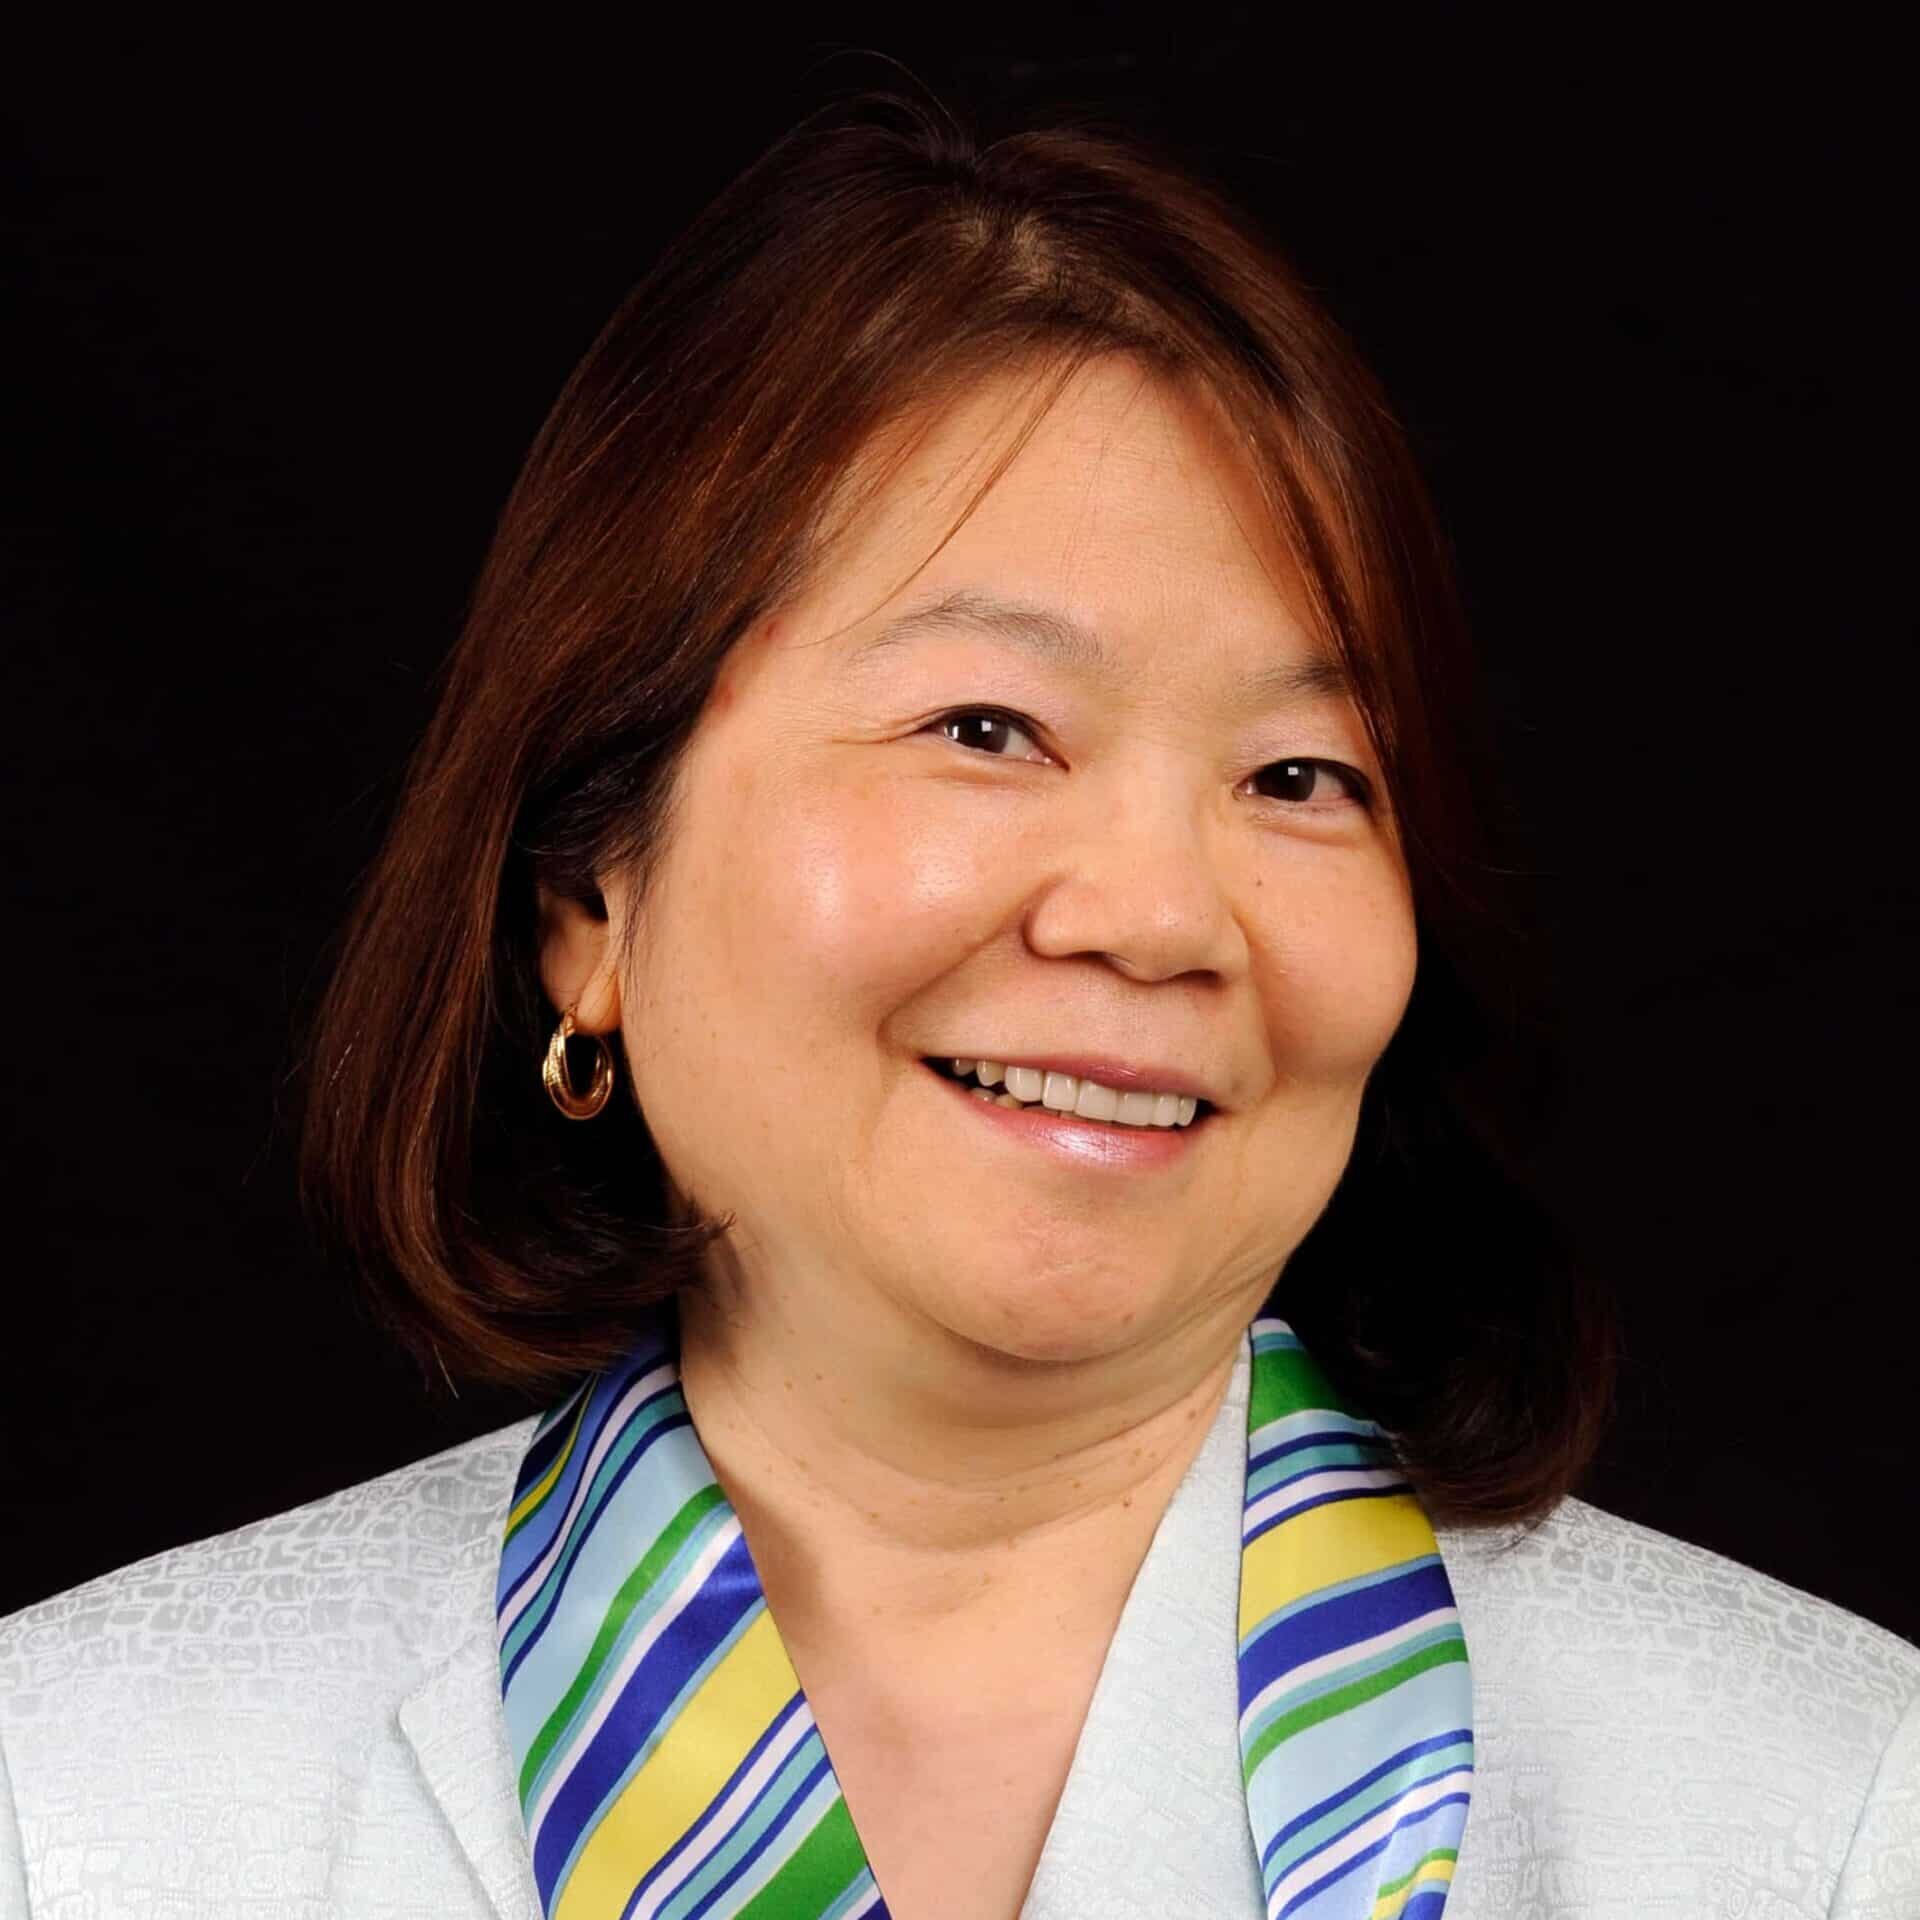 Dr. Jeanne Wei